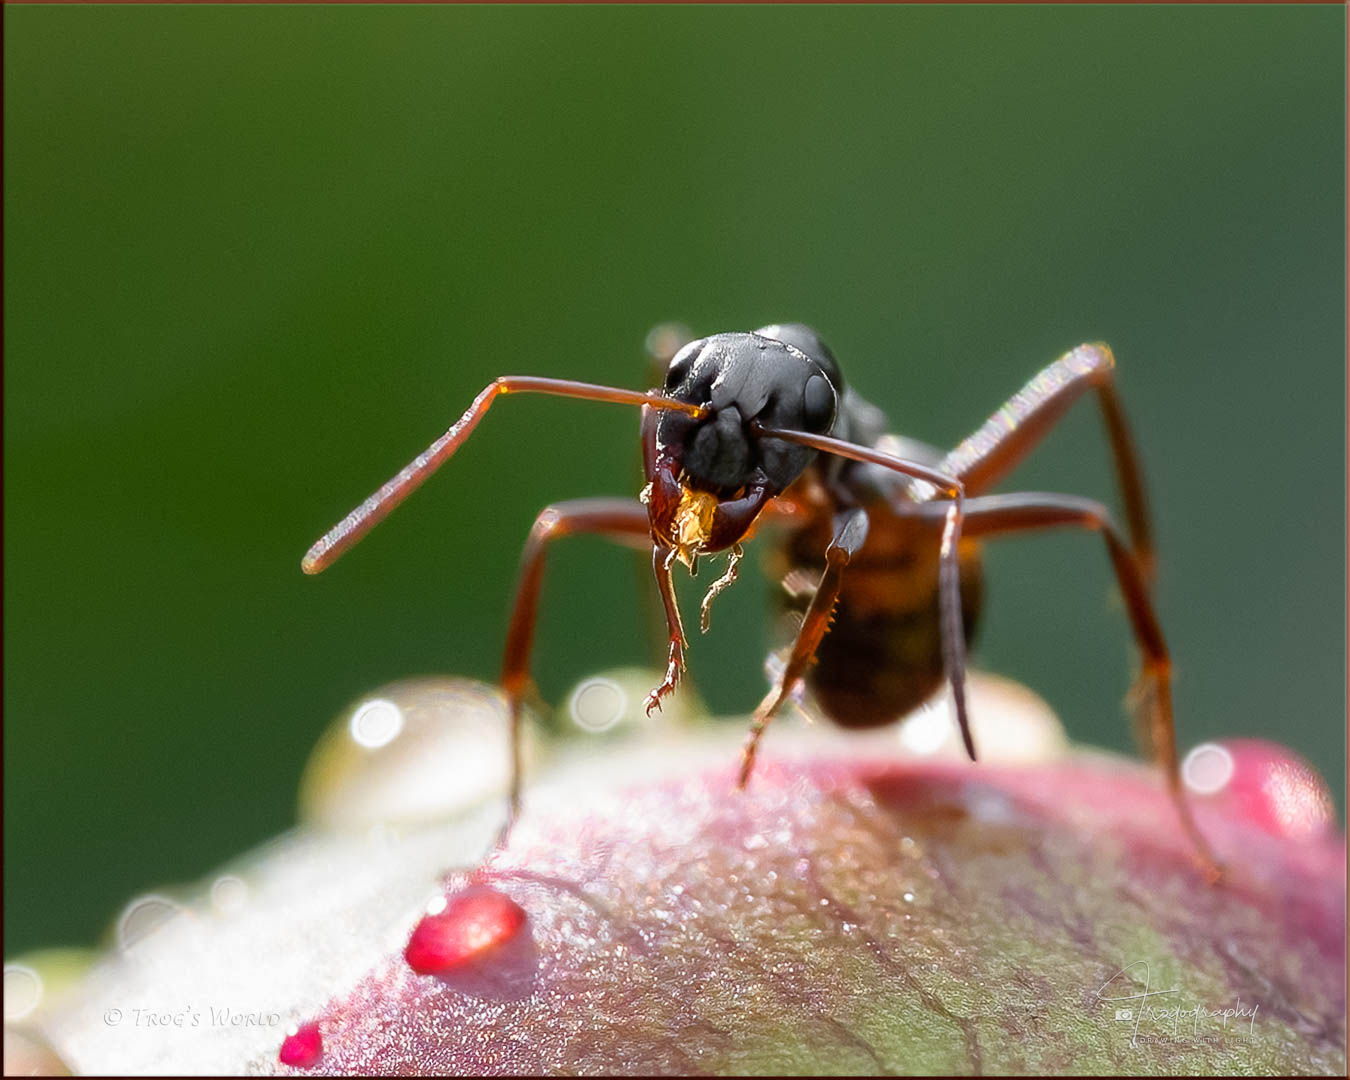 Ant on a peony bud